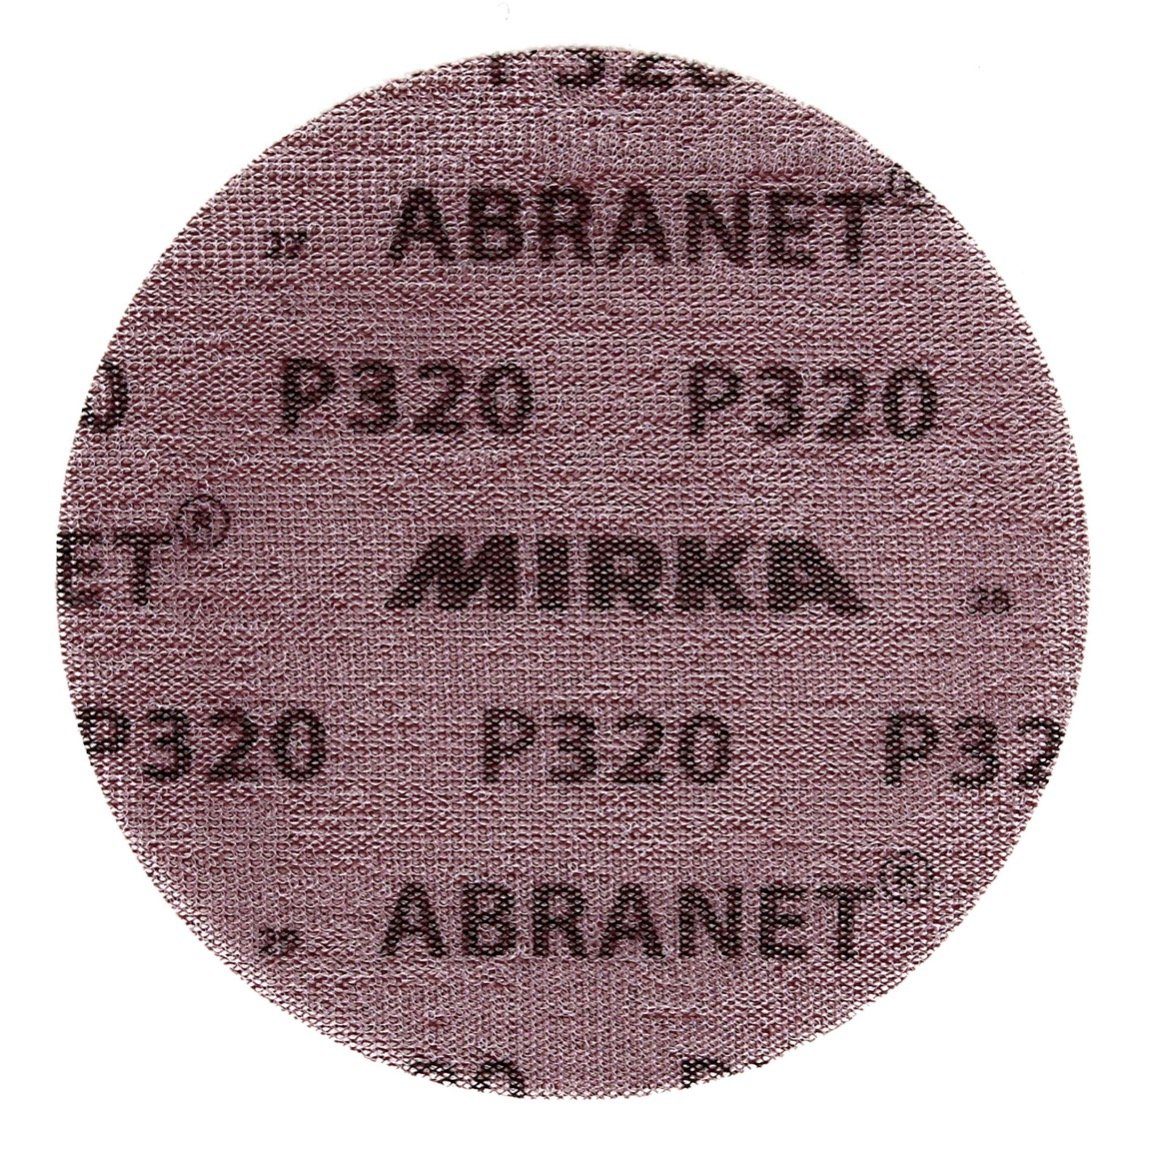 50 Stk. ABRANET Mirka Schleifscheibe P320 150mm Grip (5424105032) Schleifscheiben